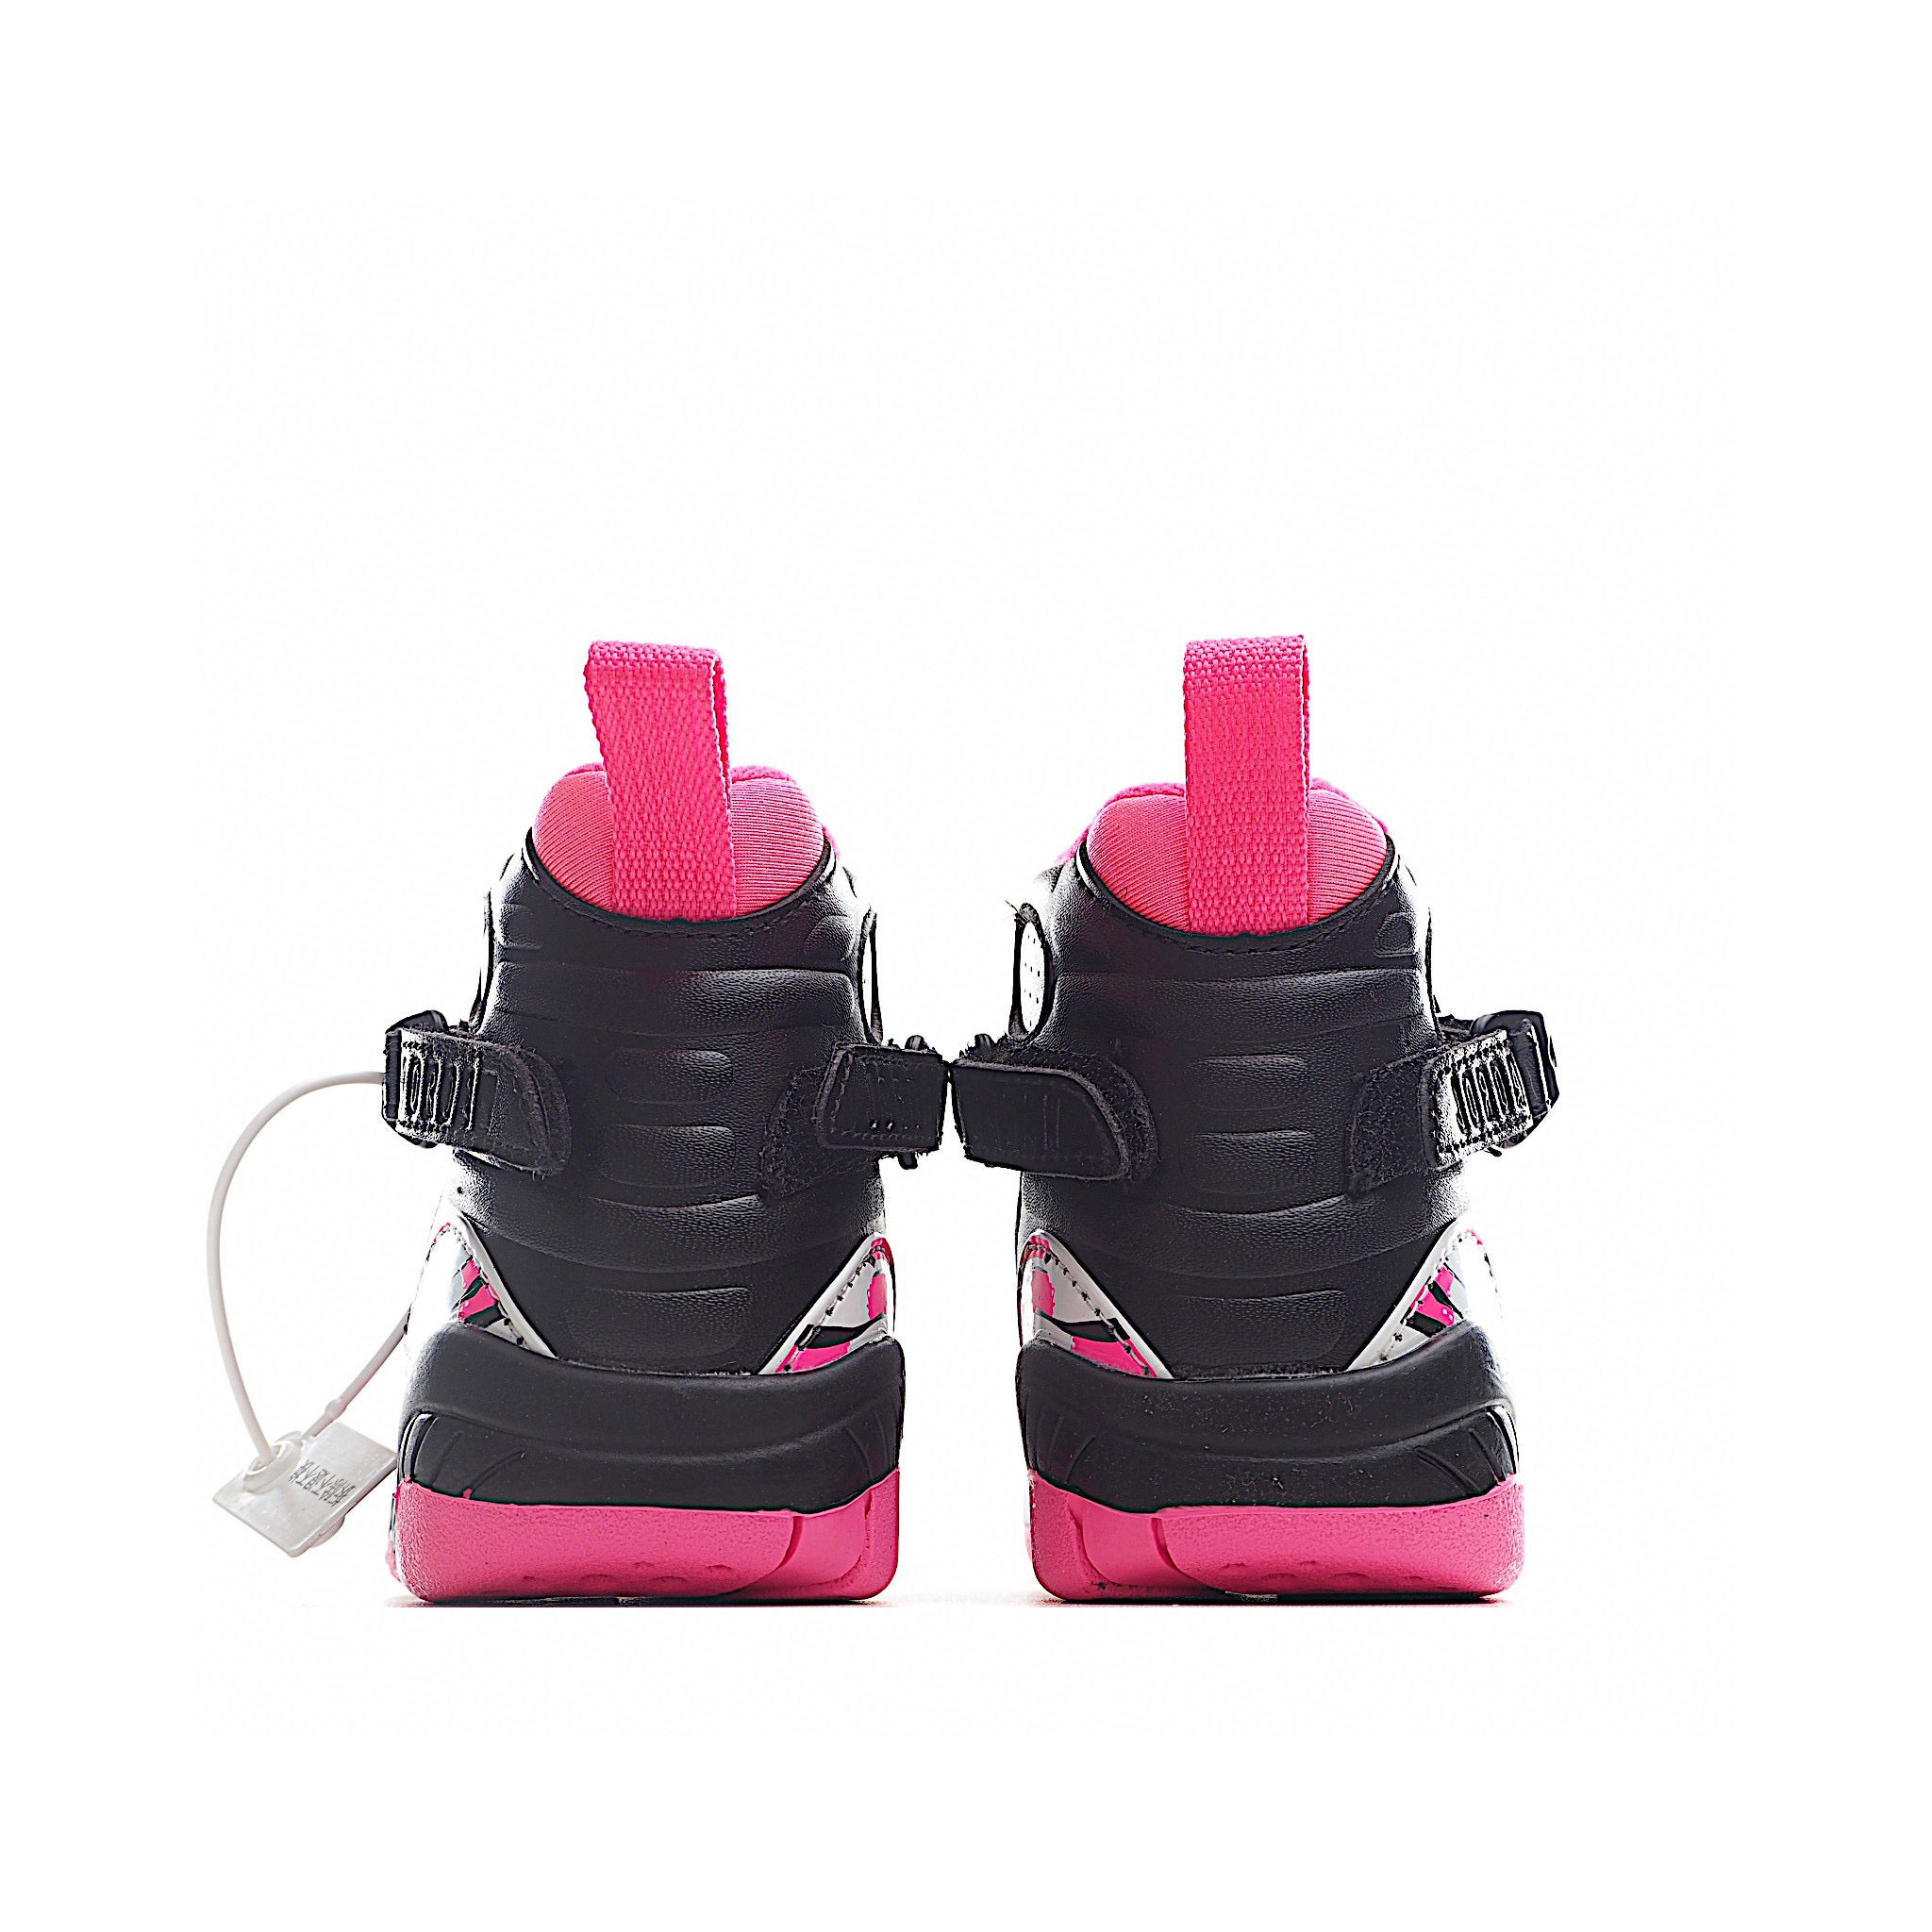 Nike air jordan 8 retro noir rose chaussures